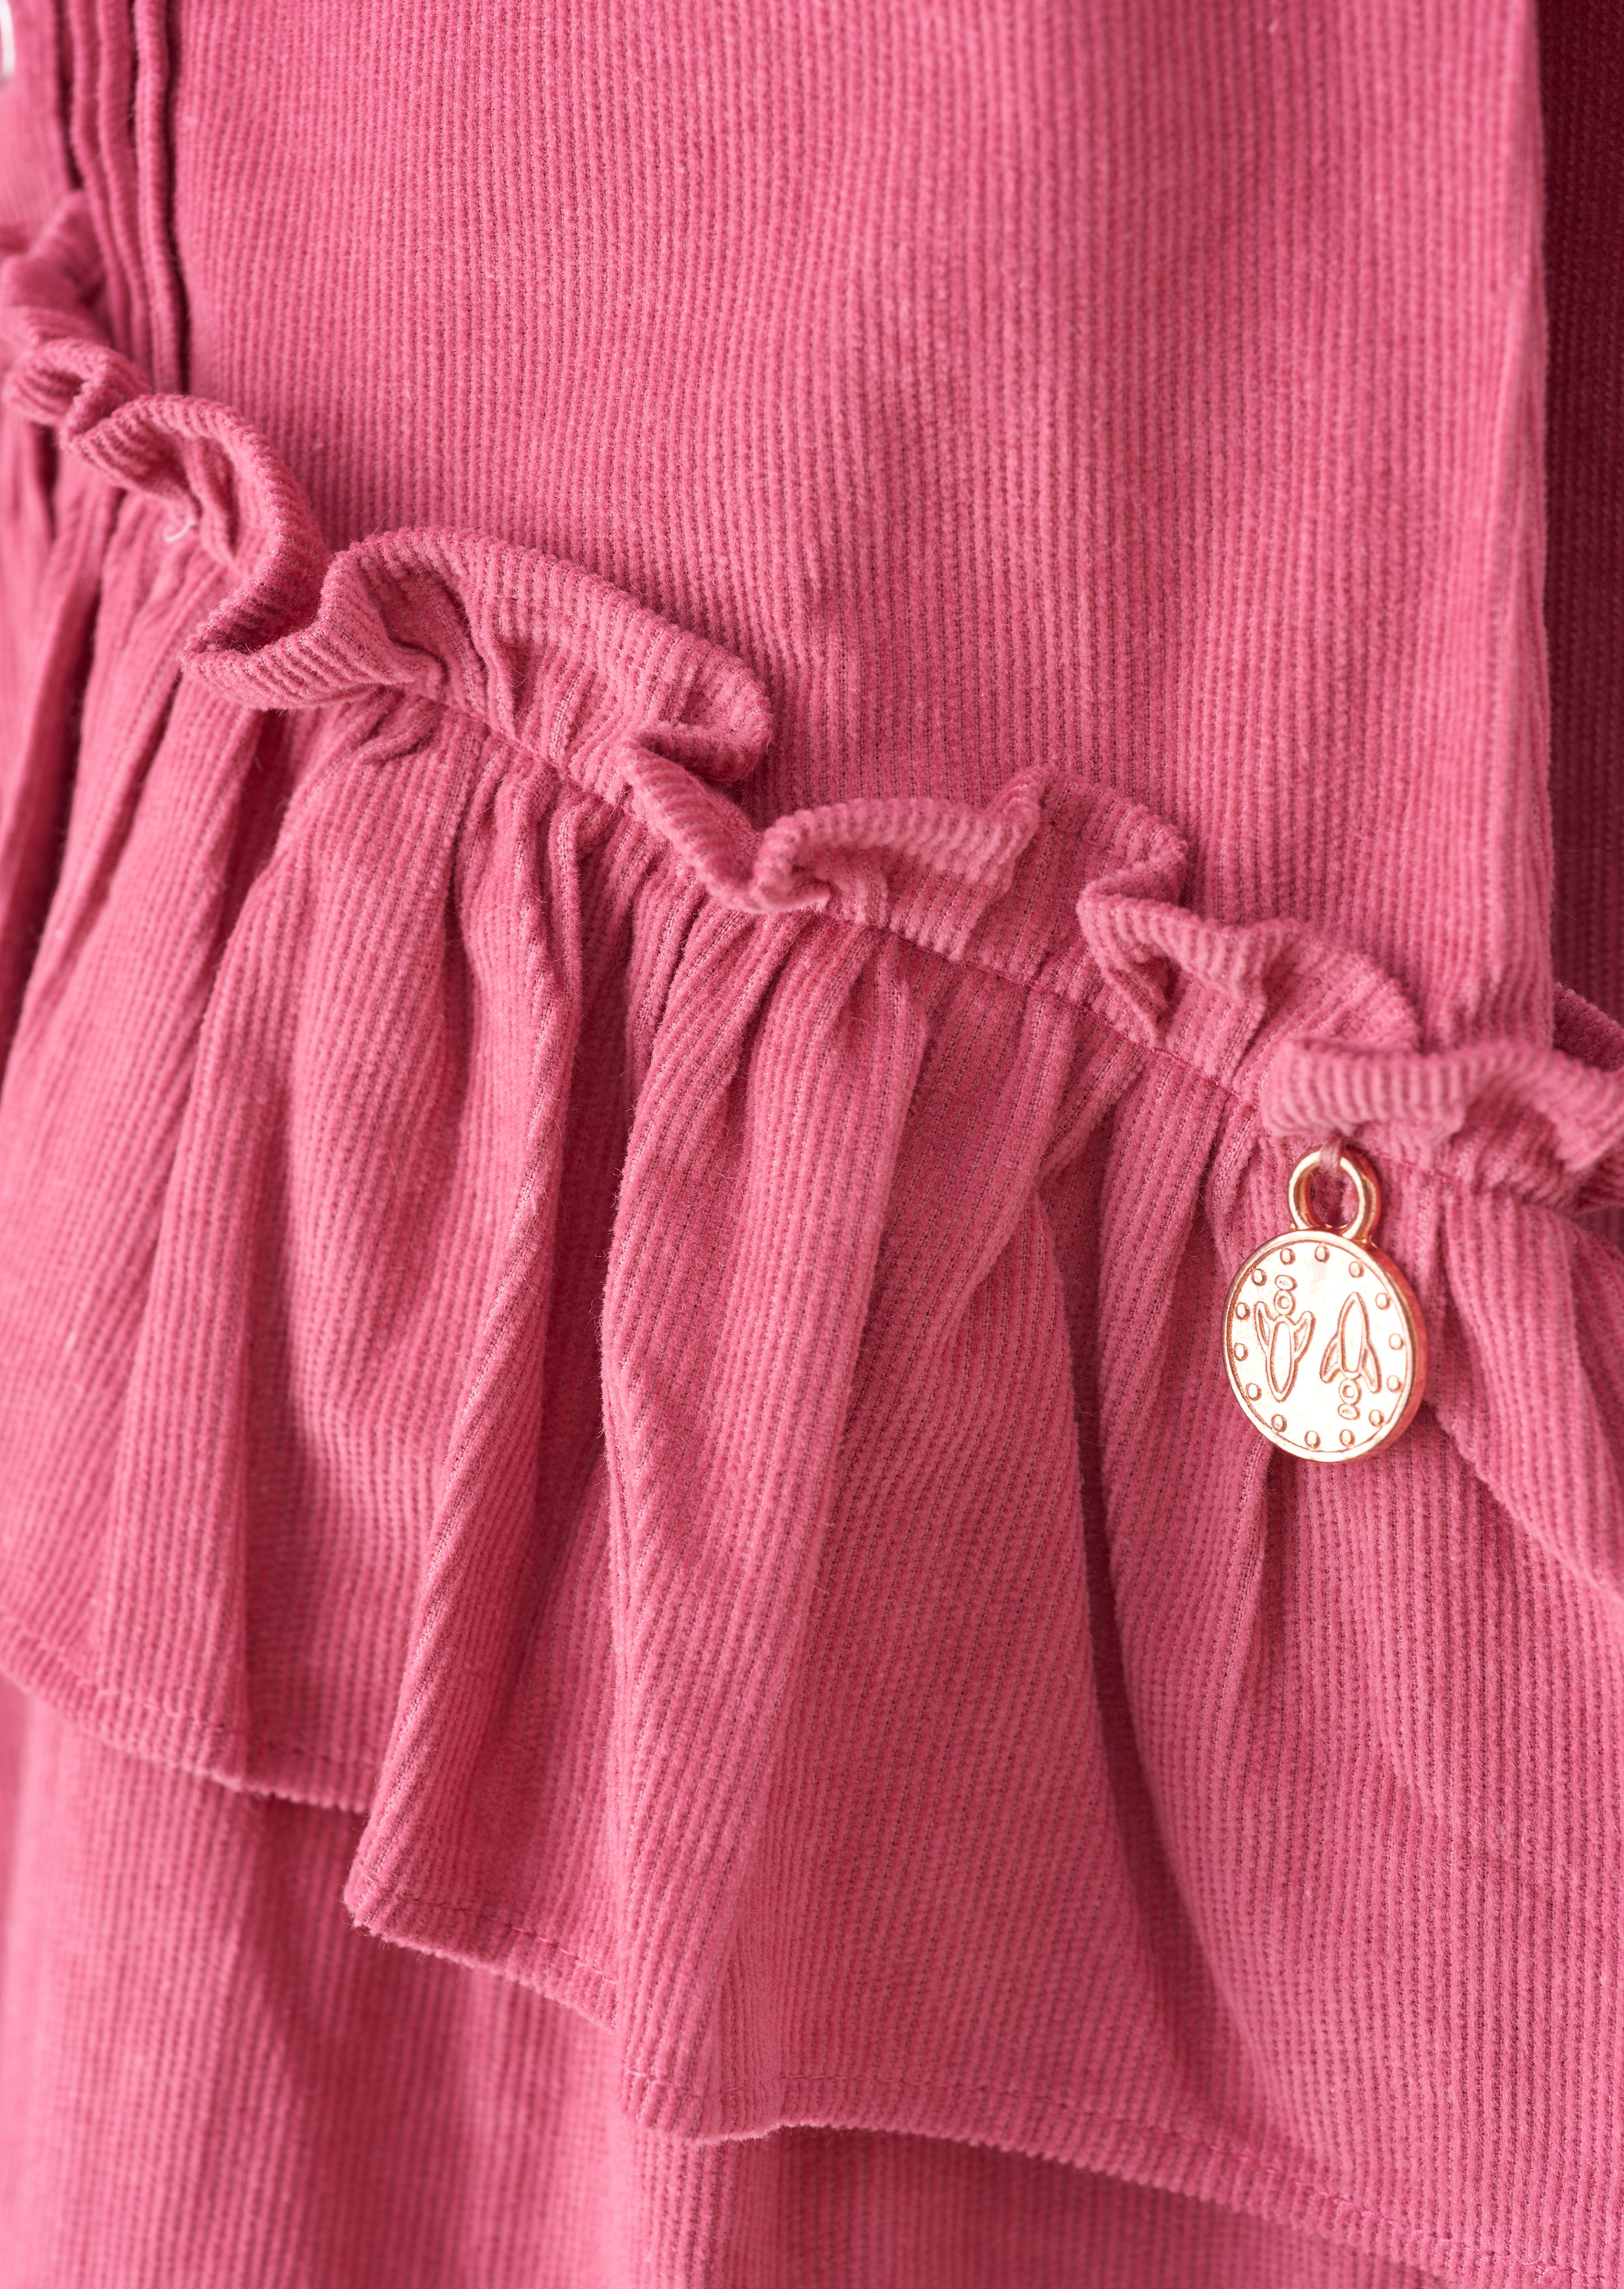 Girls Pink Cotton Peplum Shirt Dress